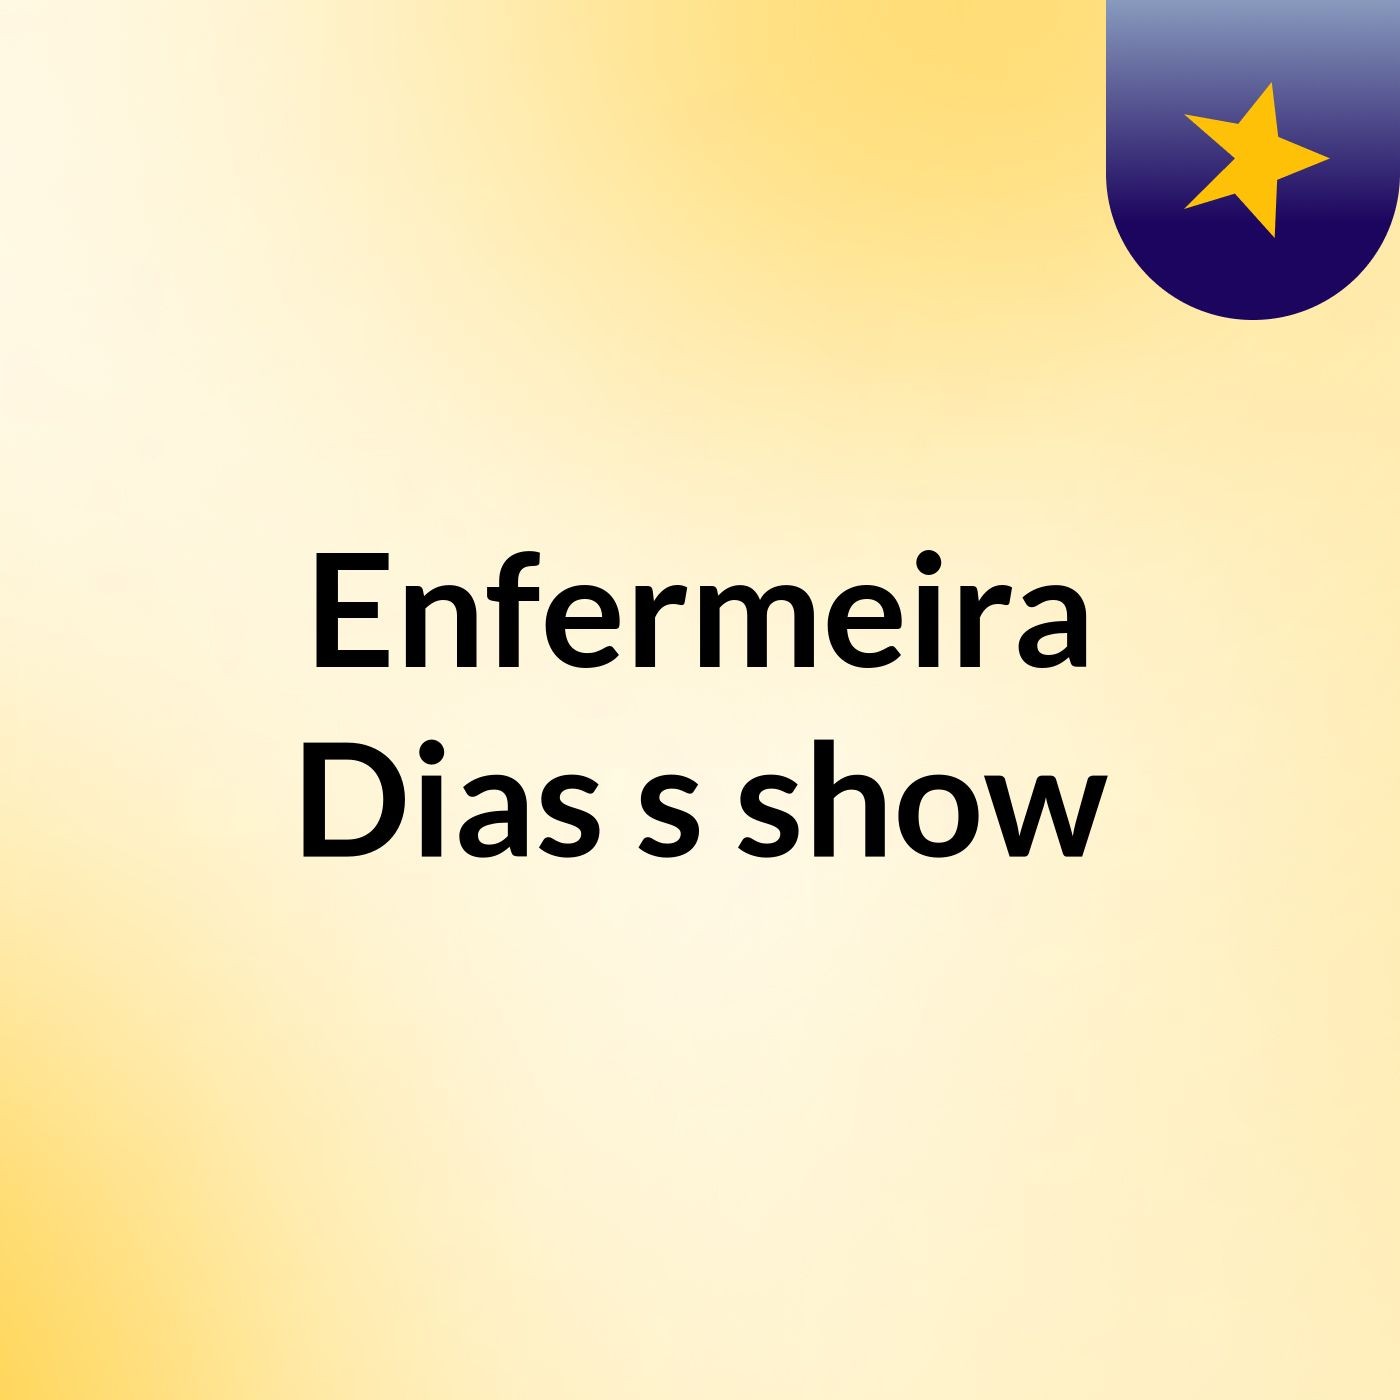 Enfermeira Dias's show